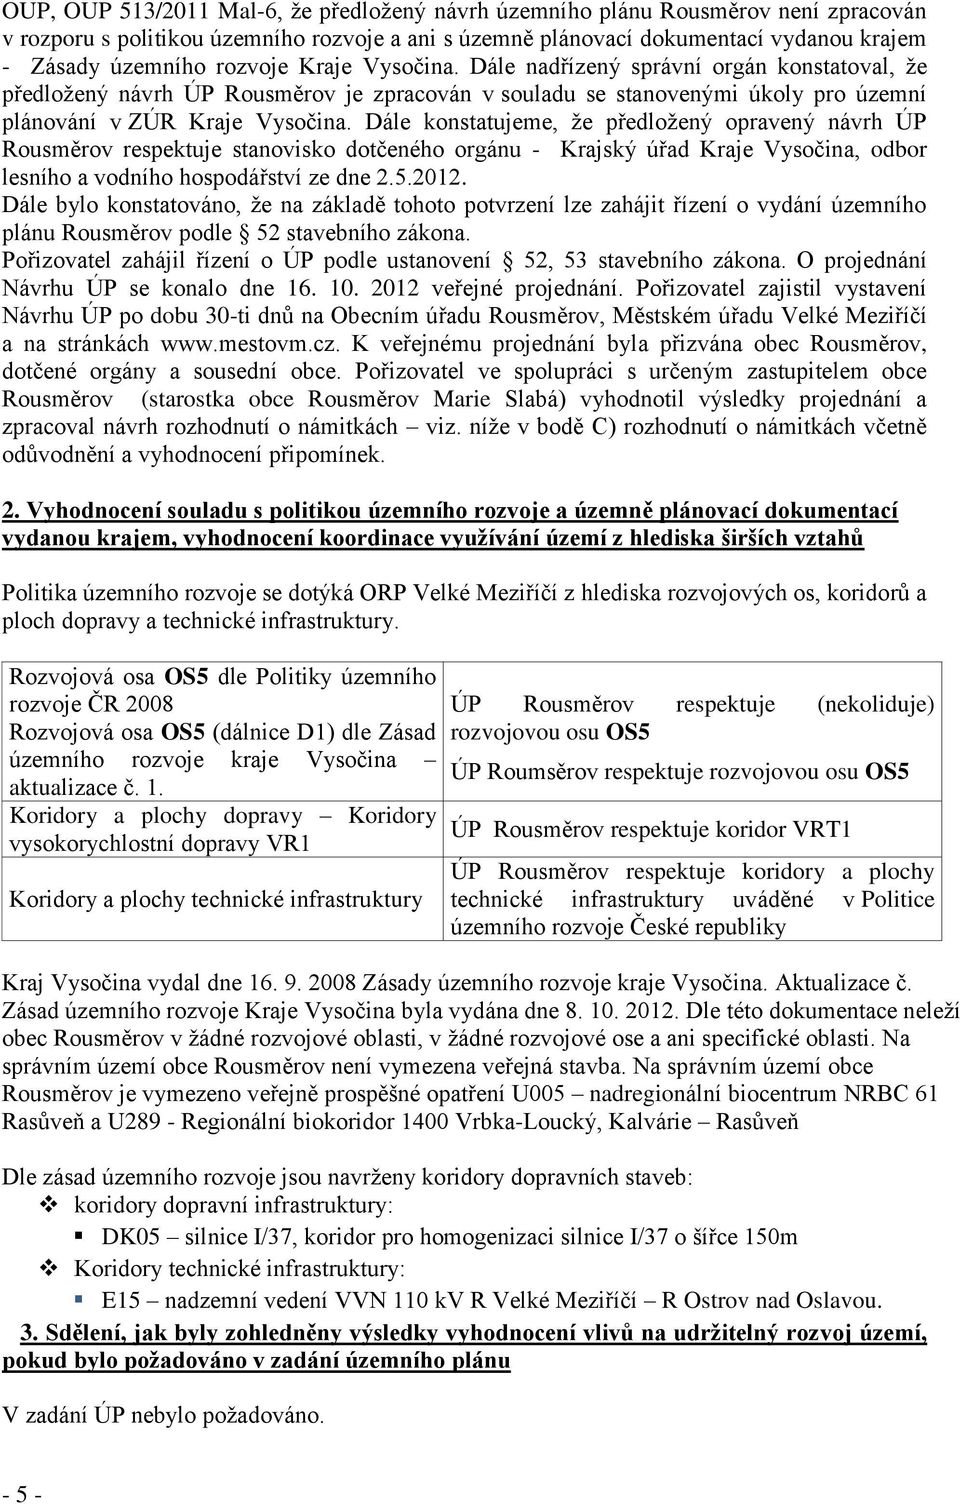 Dále konstatujeme, že předložený opravený návrh ÚP Rousměrov respektuje stanovisko dotčeného orgánu - Krajský úřad Kraje Vysočina, odbor lesního a vodního hospodářství ze dne 2.5.2012.